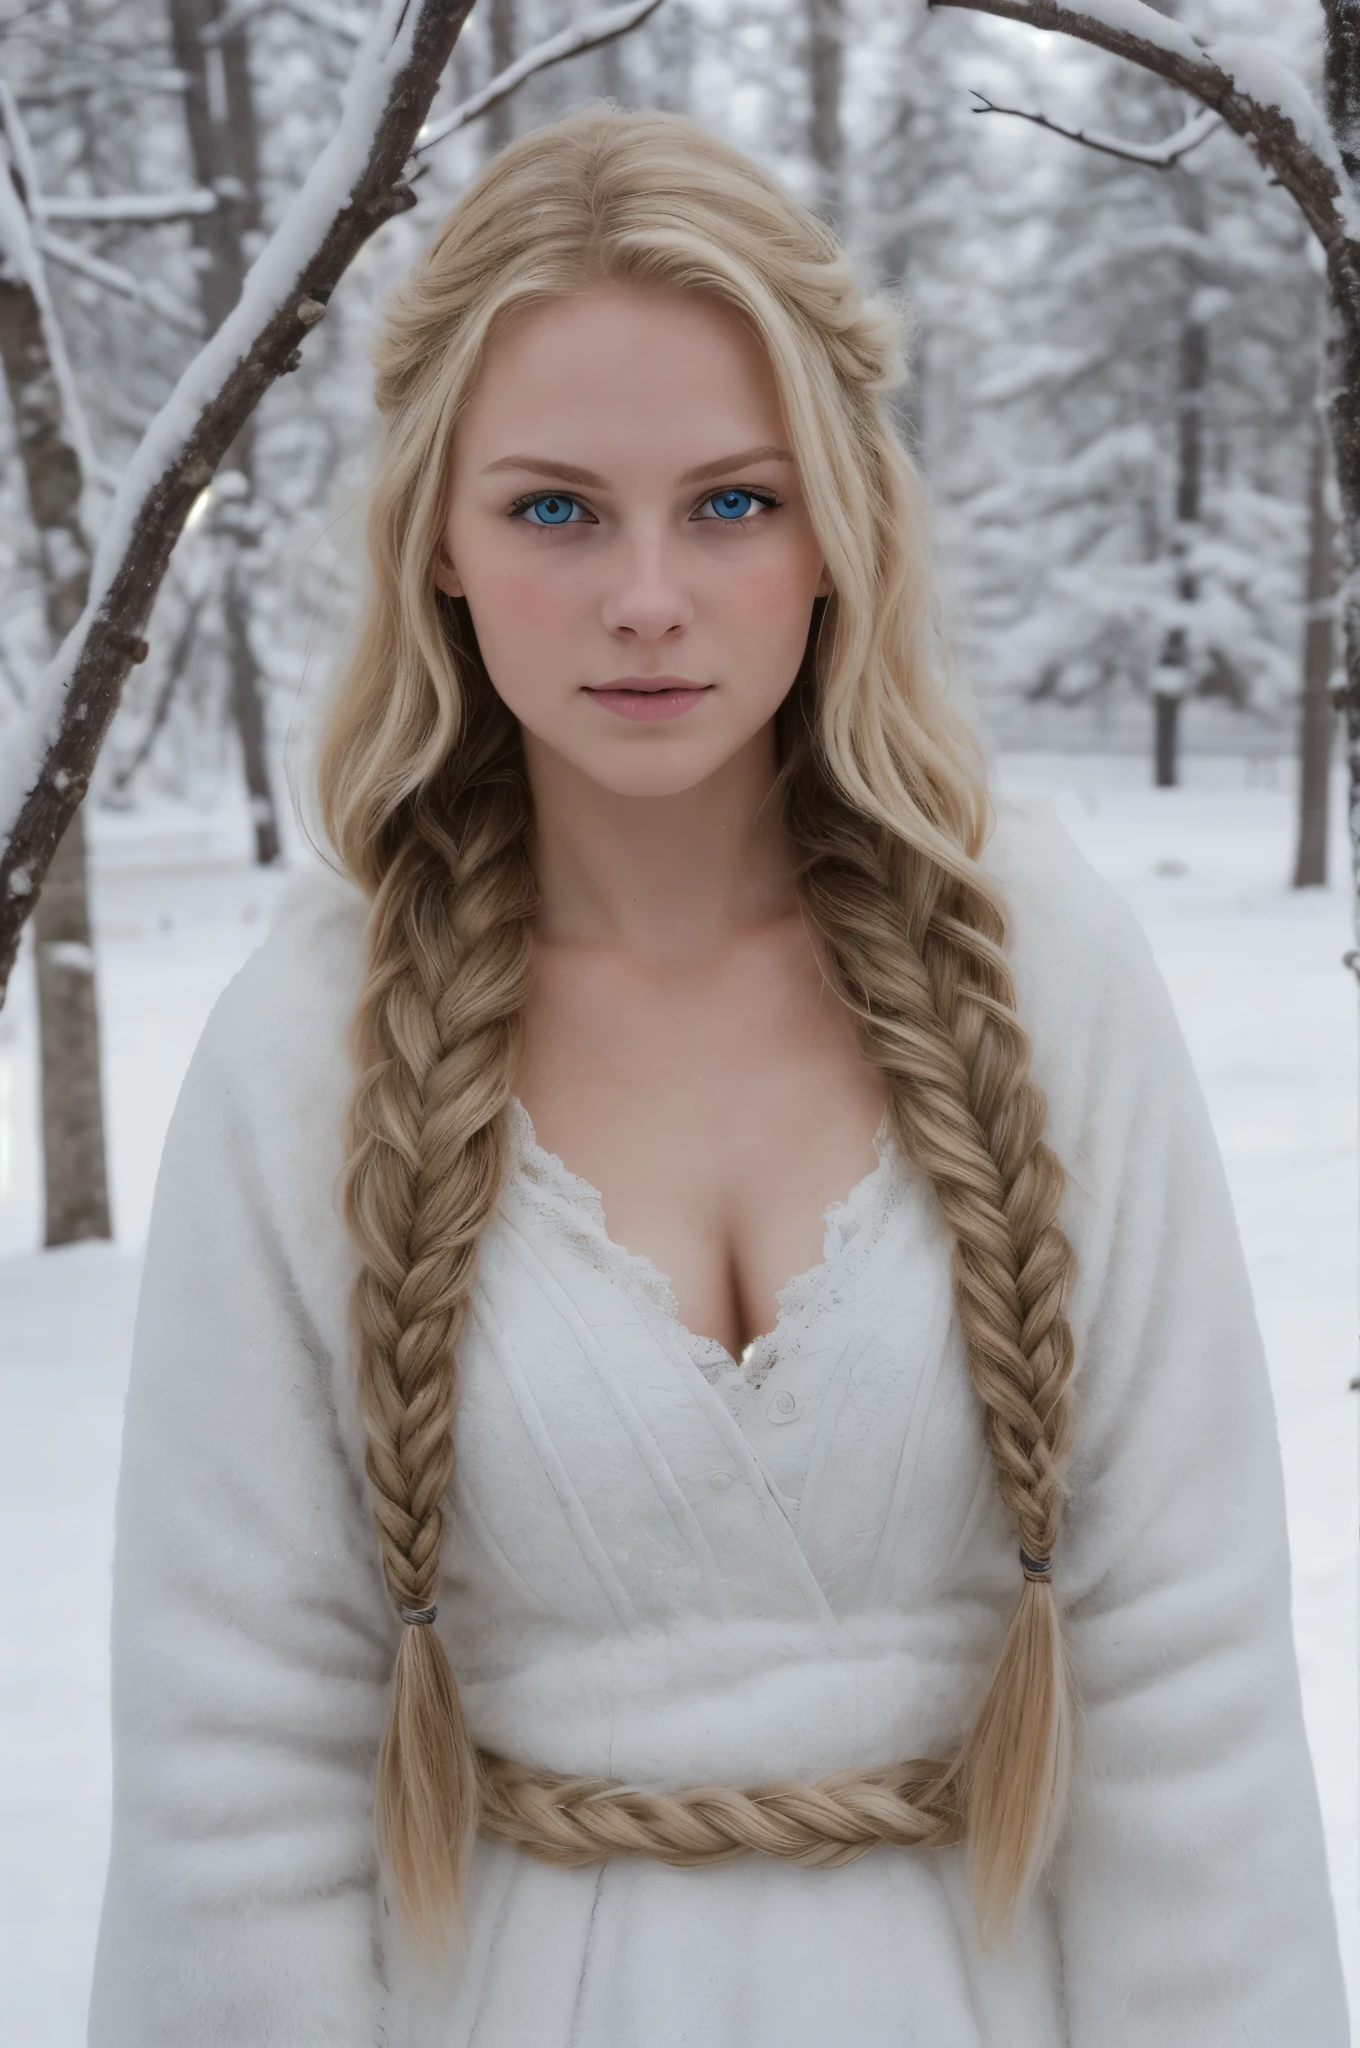 (实际的:1.2), 模拟摄影风格, 斯堪的纳维亚女战士, 梦幻般的雪景, 金色辫子头发, 全身, 柔和的自然光, 可爱又性感, 乐趣, 细致的脸部和蓝眼睛, 优良的品质, 杰作, 详细的北方背景, 质量: 16千, RAW 照片